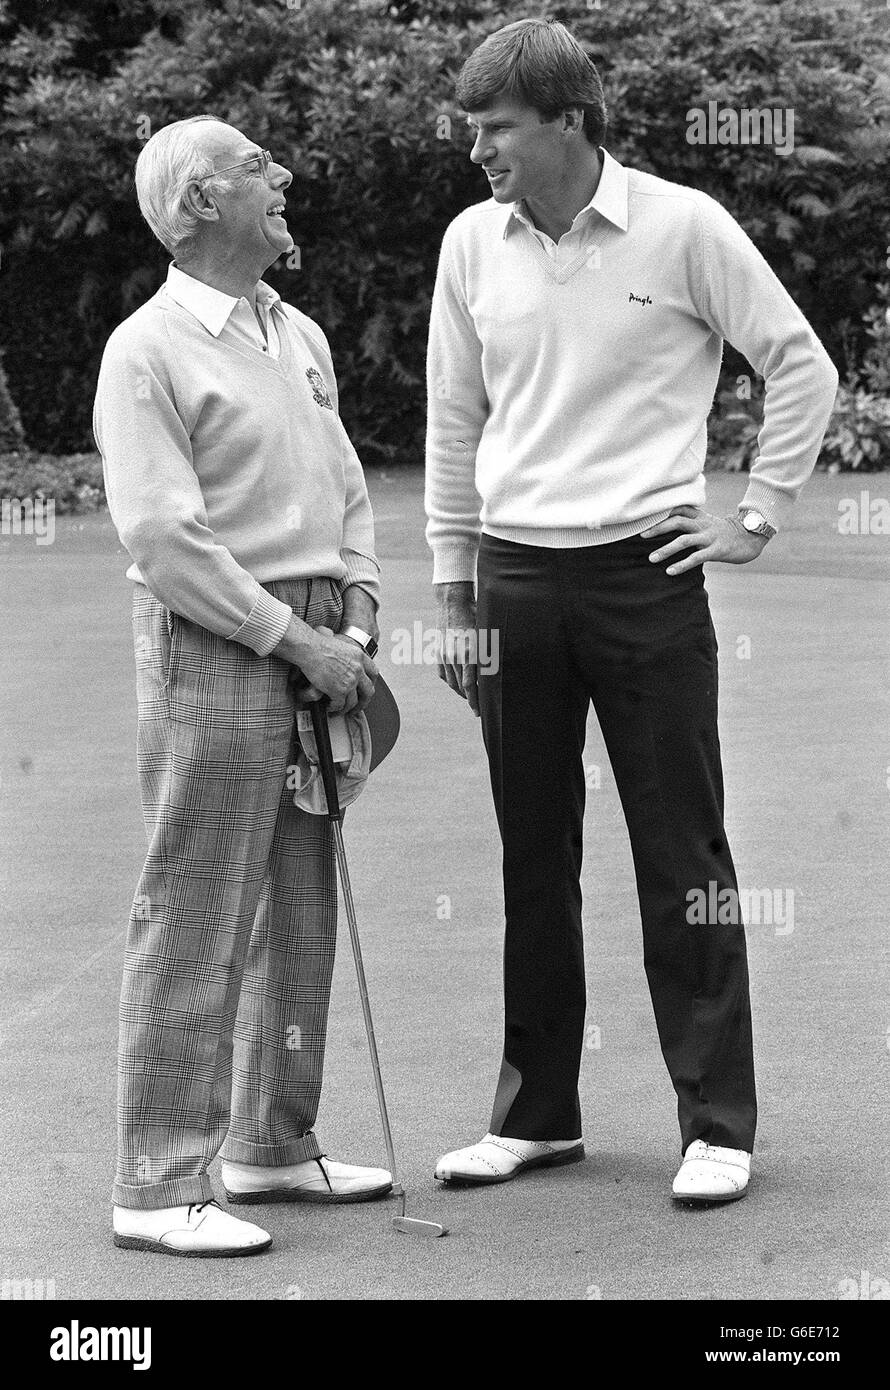 Nick Faldo, le nouveau champion de golf de Grande-Bretagne (à droite), partage une blague avec Denis Thatcher lors du tournoi PGA Pro-AM à Sunningdale. Banque D'Images